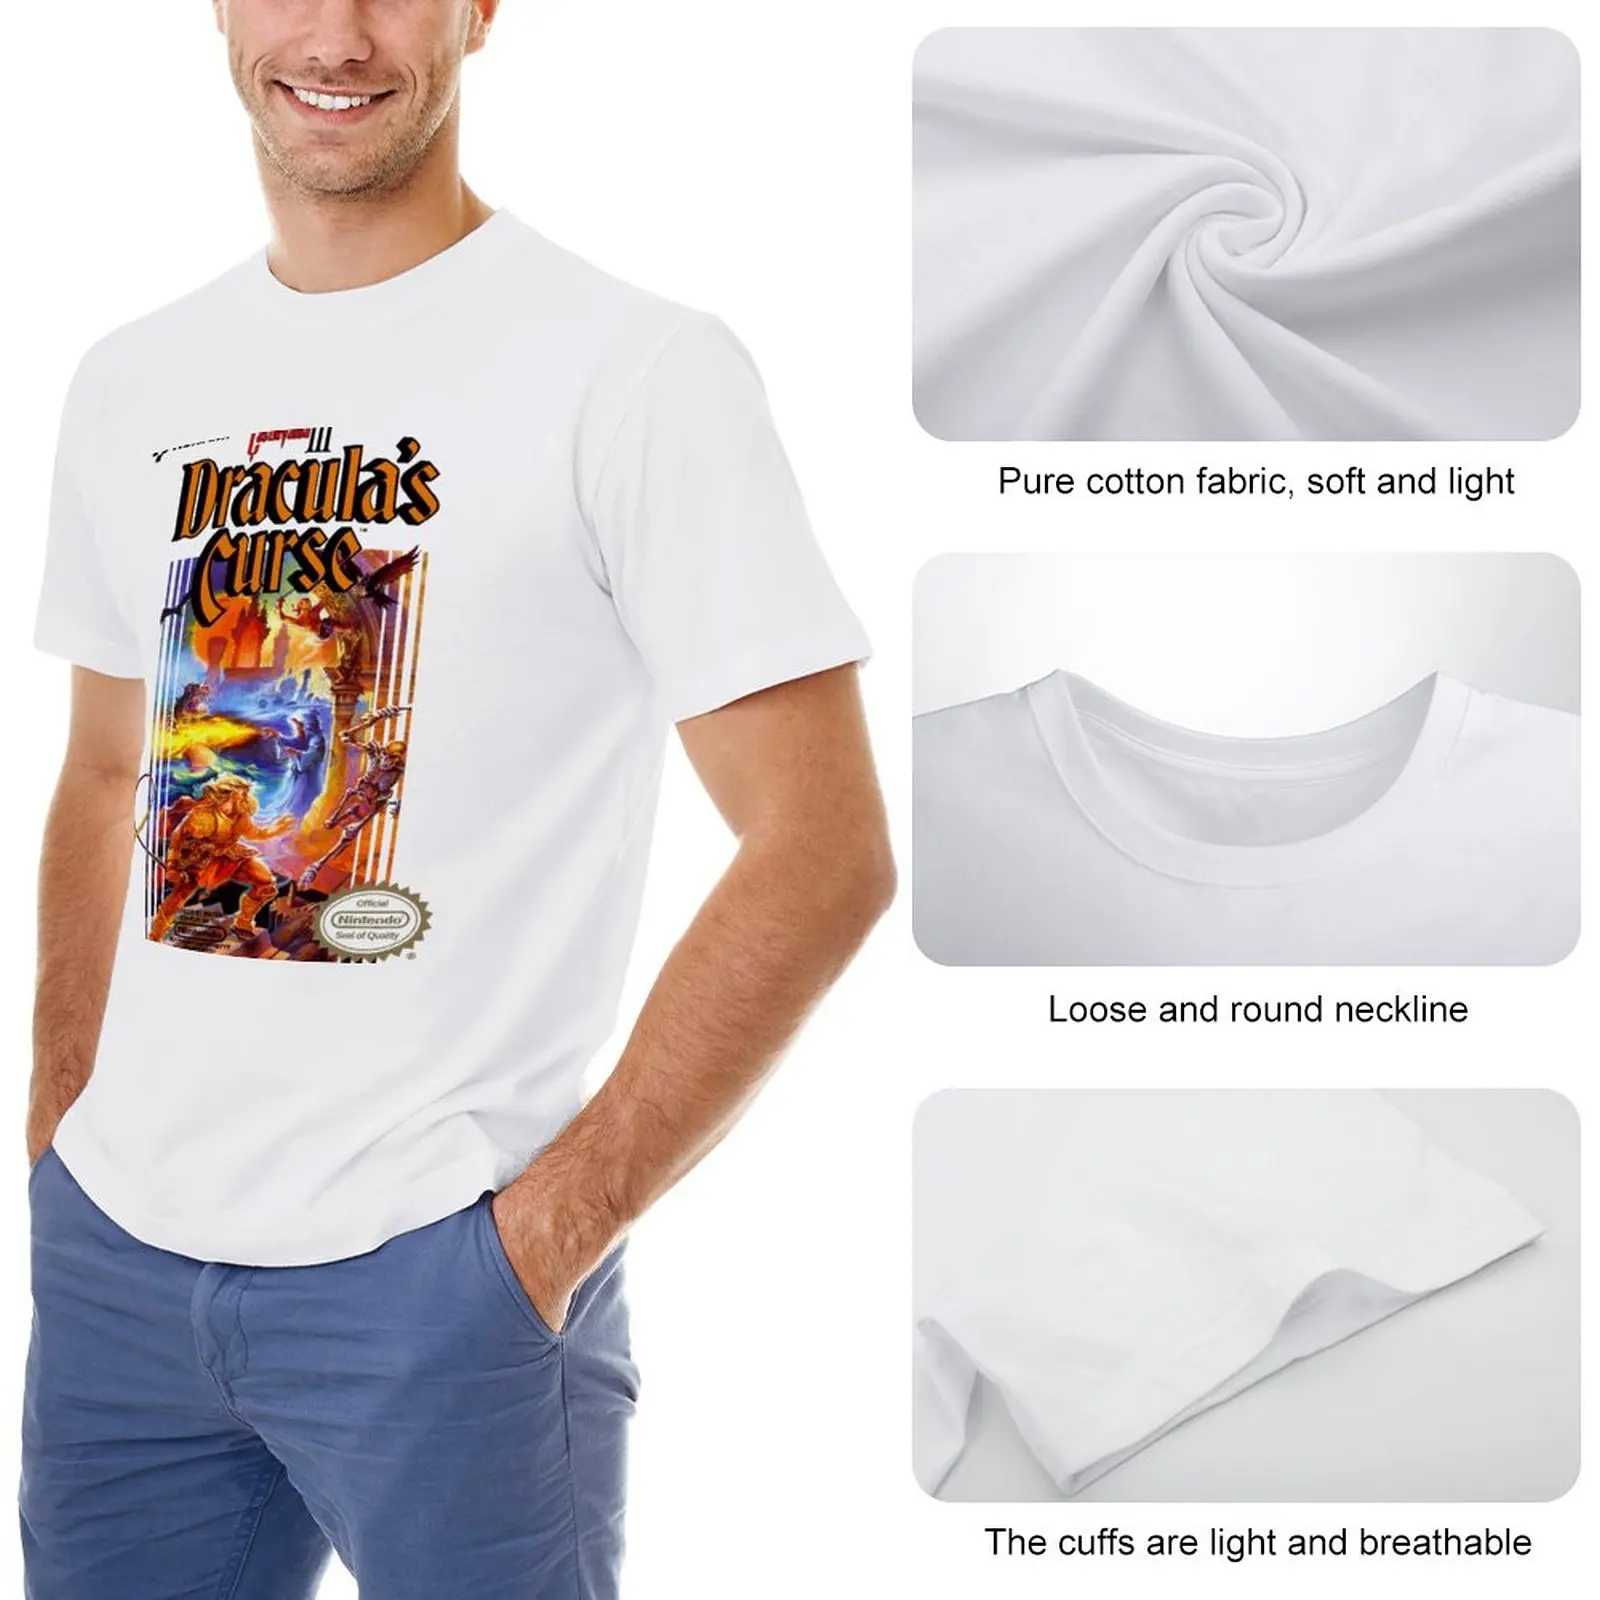 Футболка Castlevania 3, короткая эстетичная одежда, забавная футболка, мужские футболки большого и высокого размера. Изображение 1